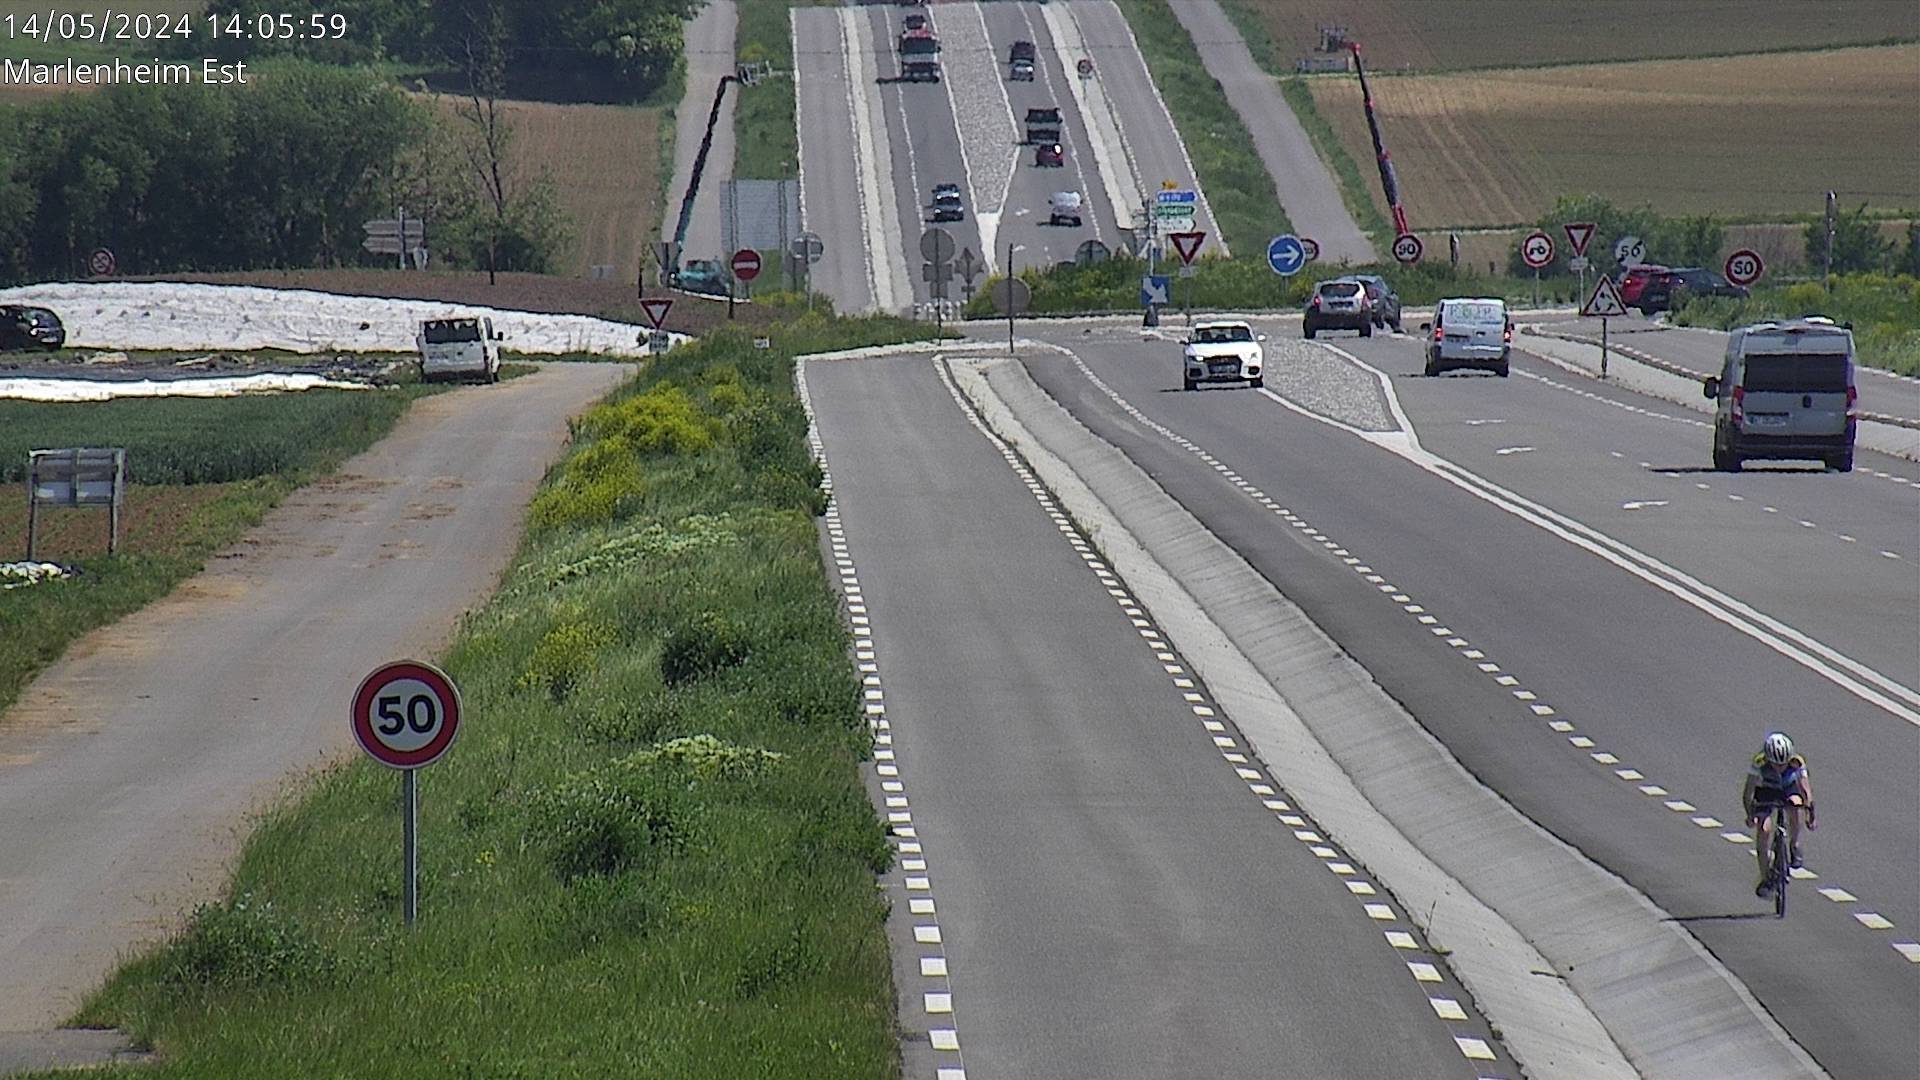 Webcam sur la D1004 à l'entrée de Marlenheim en venant de Strasbourg. Vue orientée vers l'est